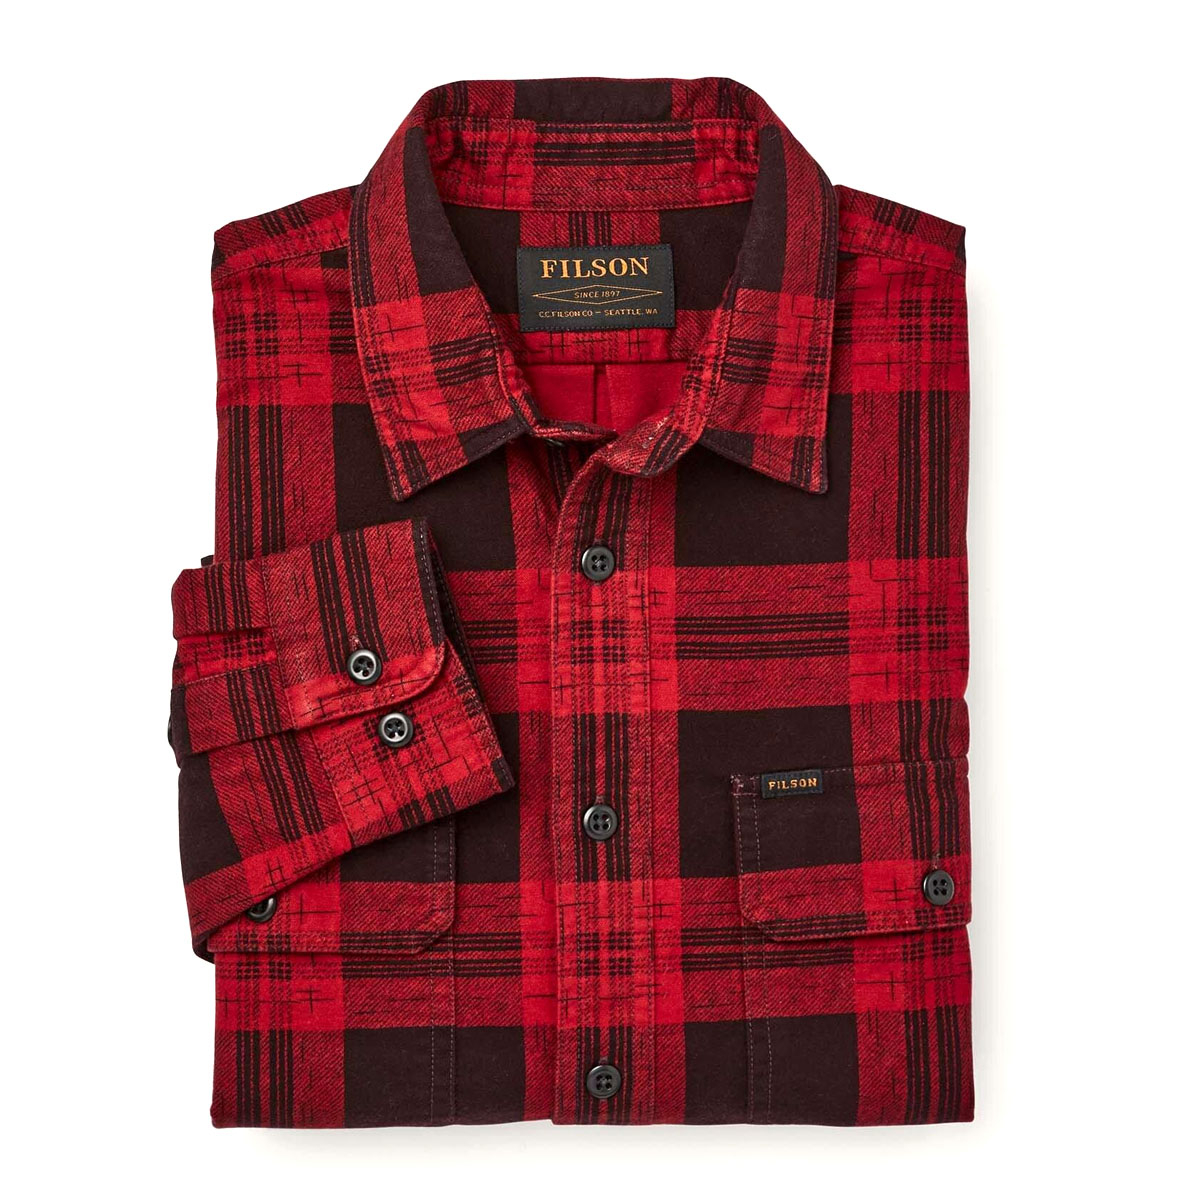 Filson Field Flannel Shirt Red Bark Plaid, ein starker, aber leichter Flanell aus gebürsteter Baumwolle. Bequem und ebenso weich wie stark